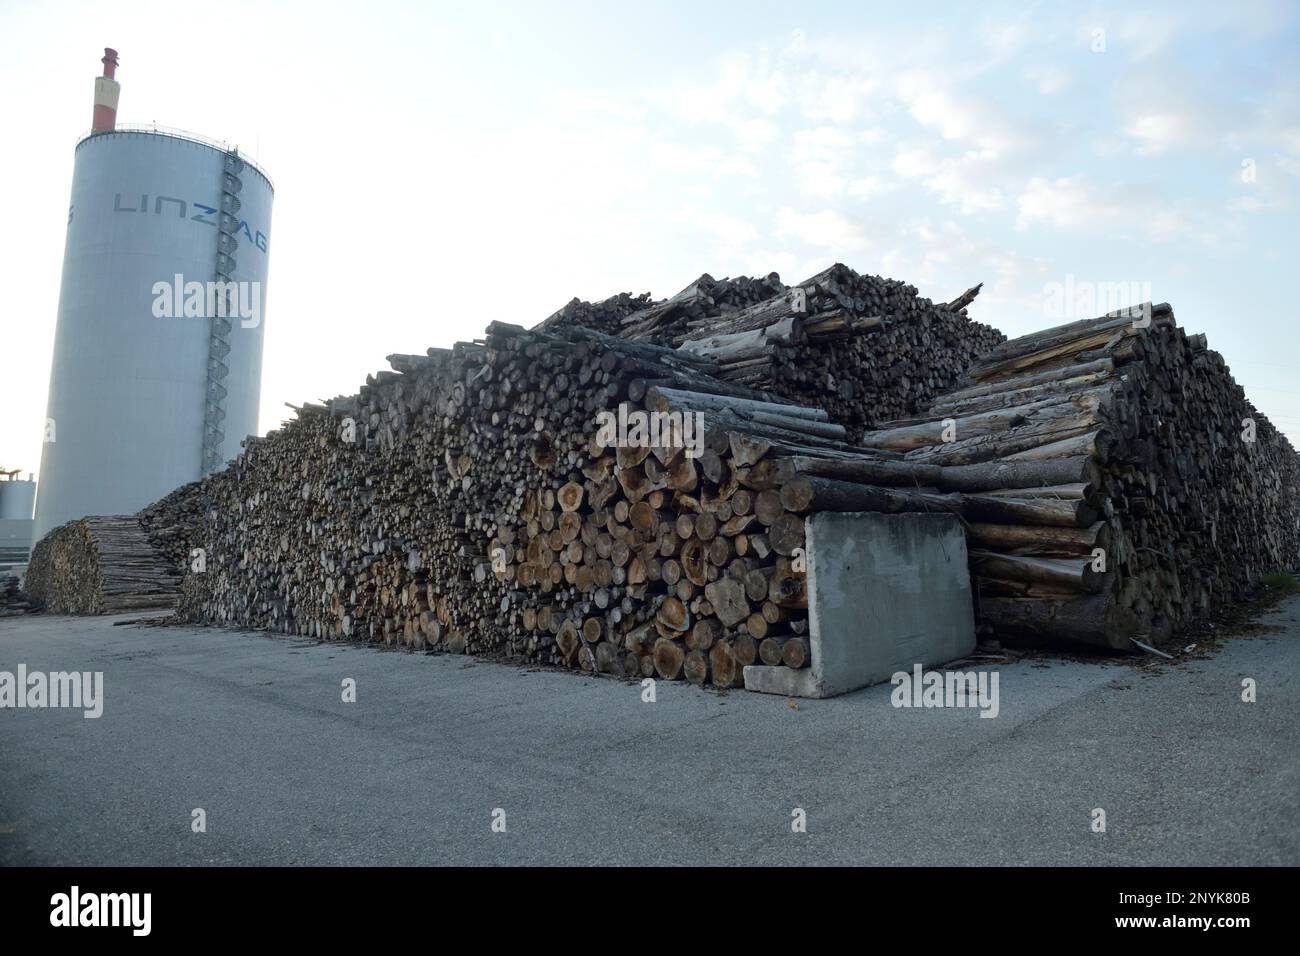 Biomass power plant - Linz - Austria Stock Photo